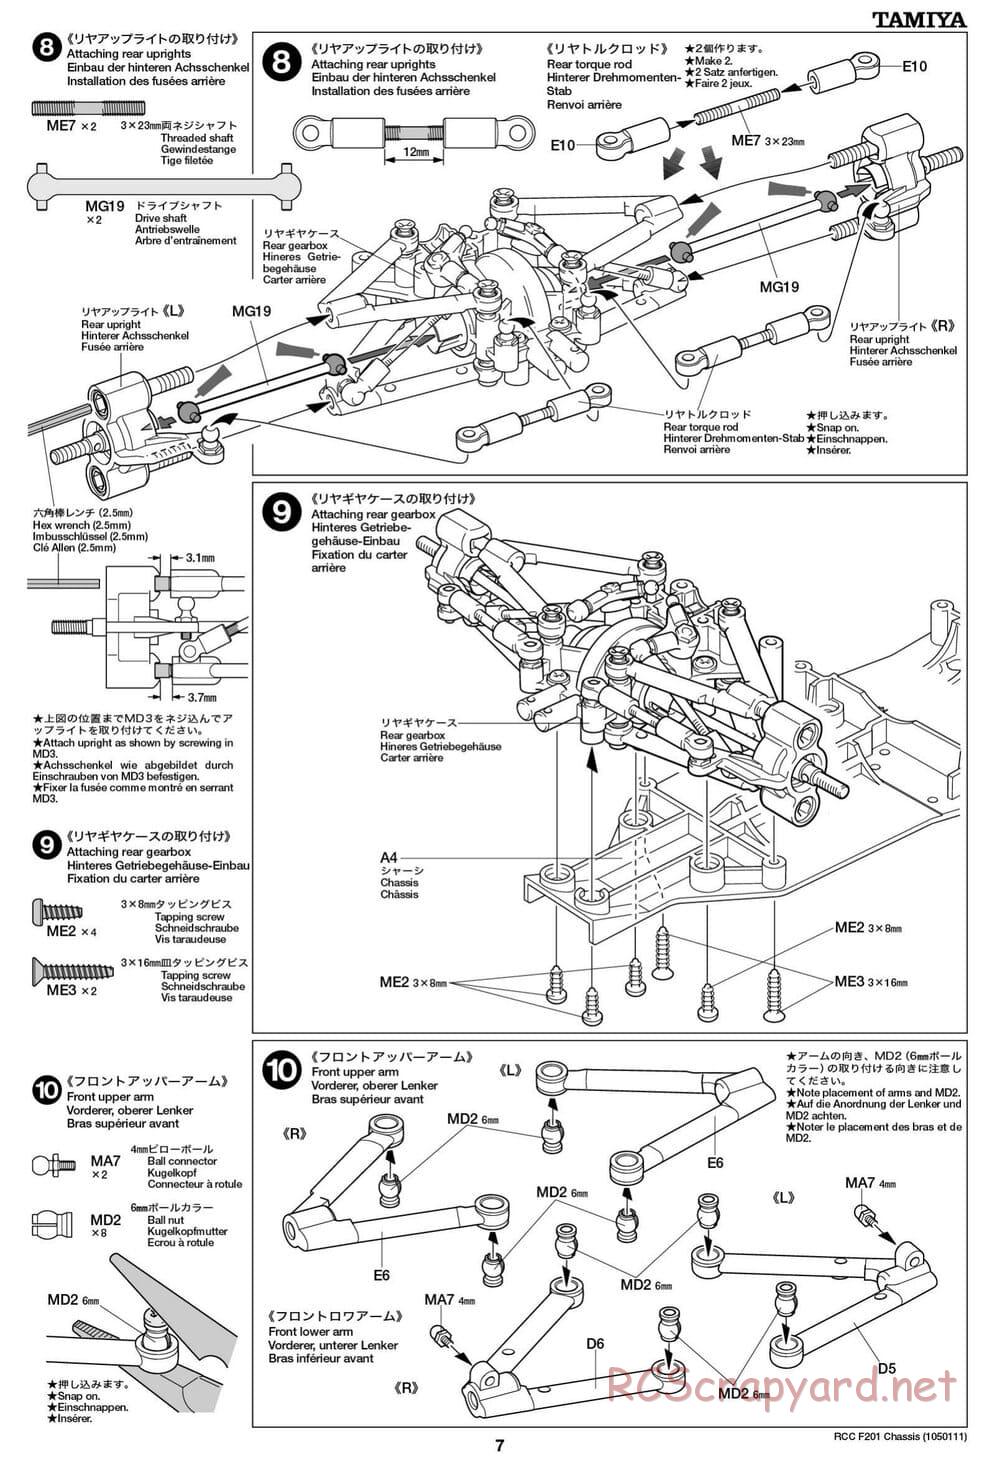 Tamiya - F201 Chassis - Manual - Page 7